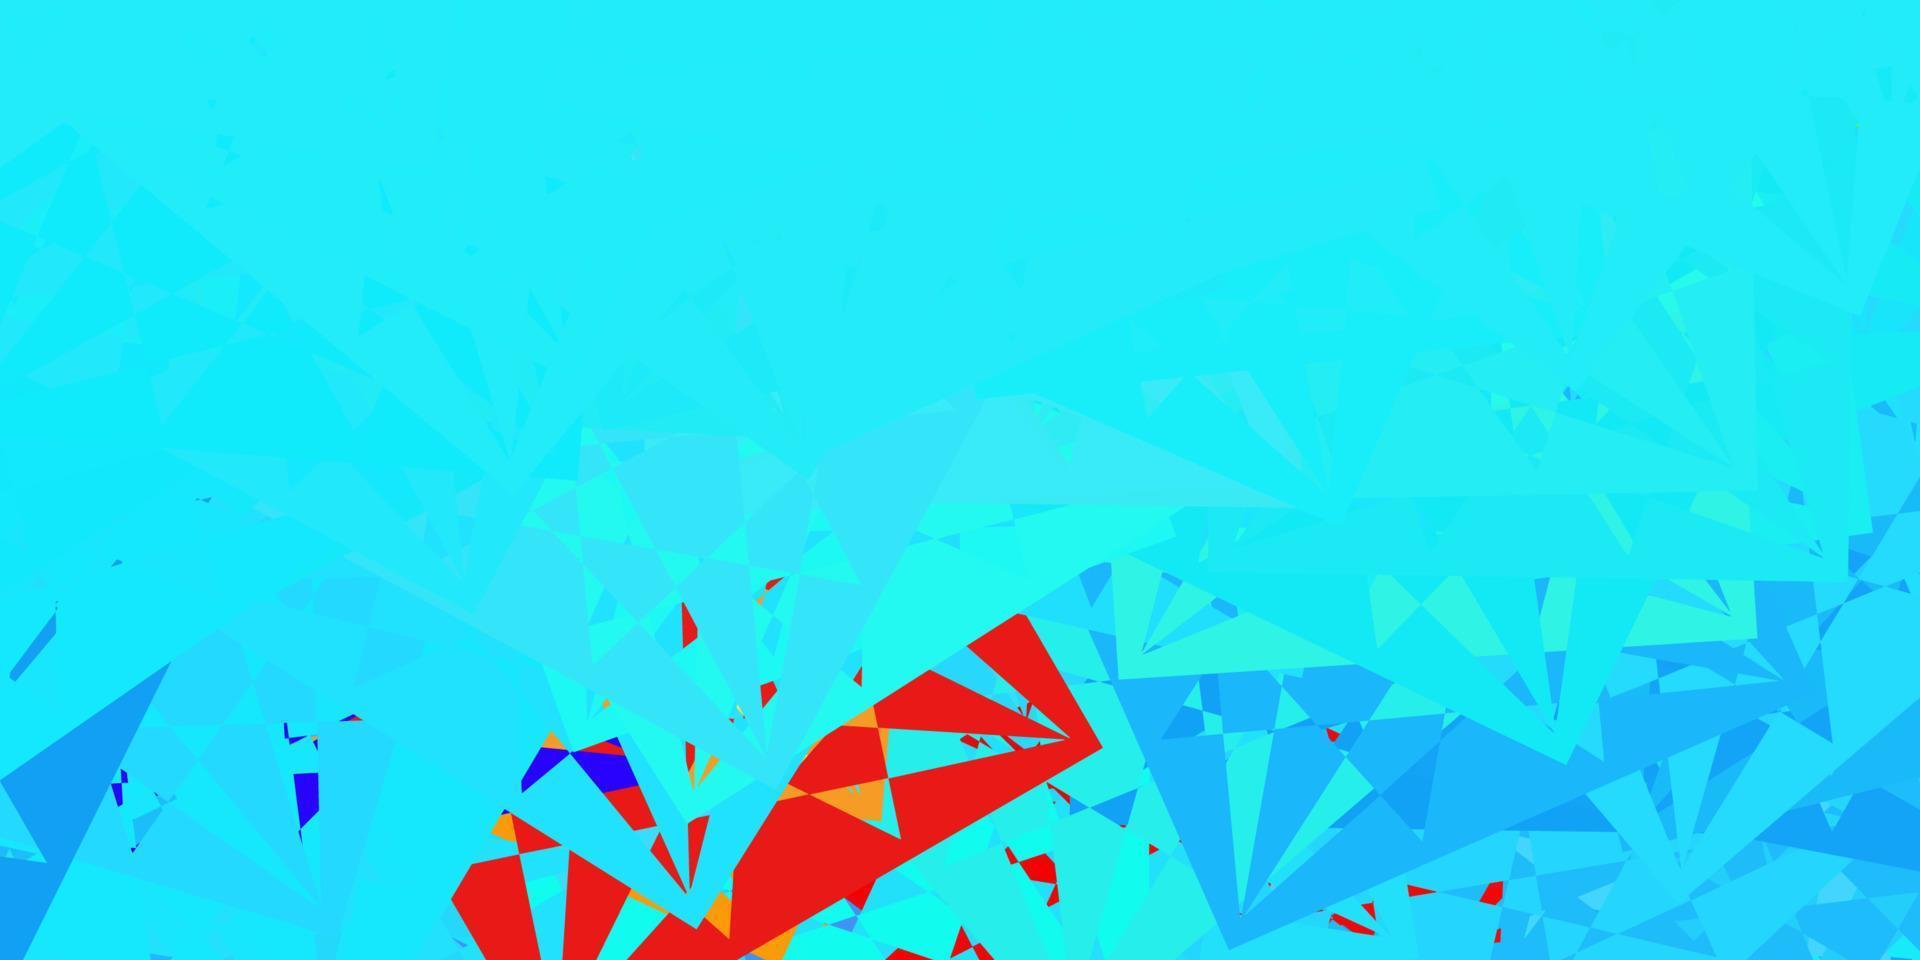 plantilla de vector azul claro, rojo con formas triangulares.